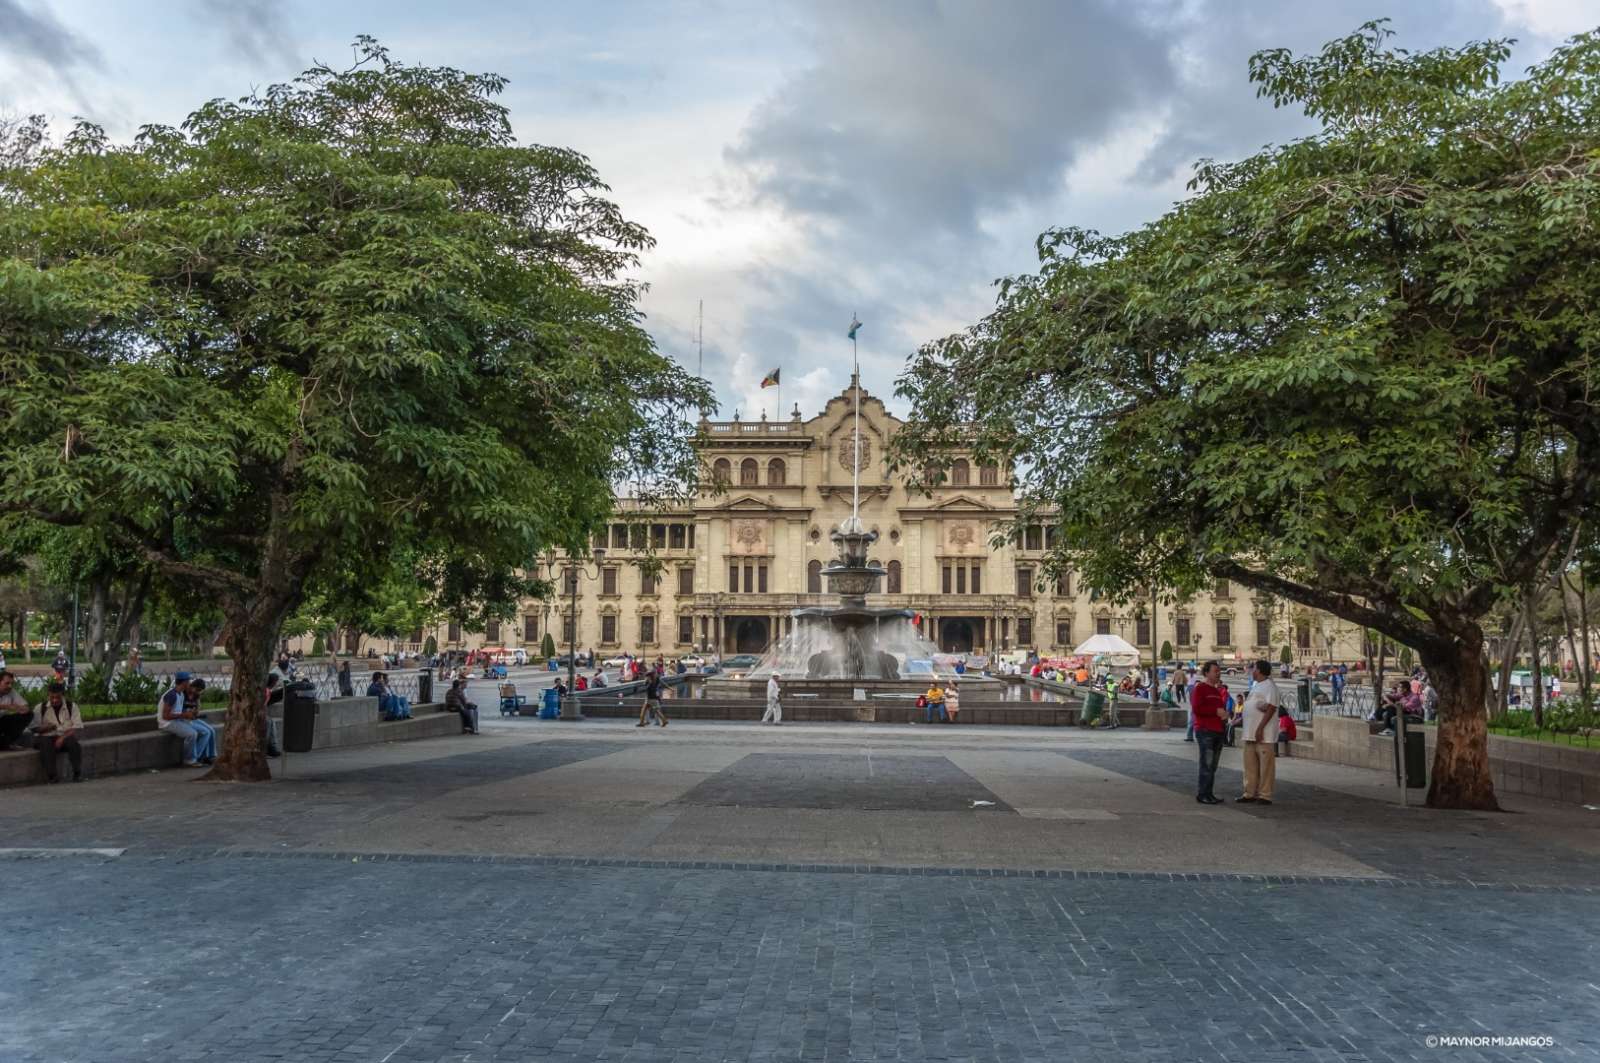 Palacio Nacional De La Cultura in Guatemala City